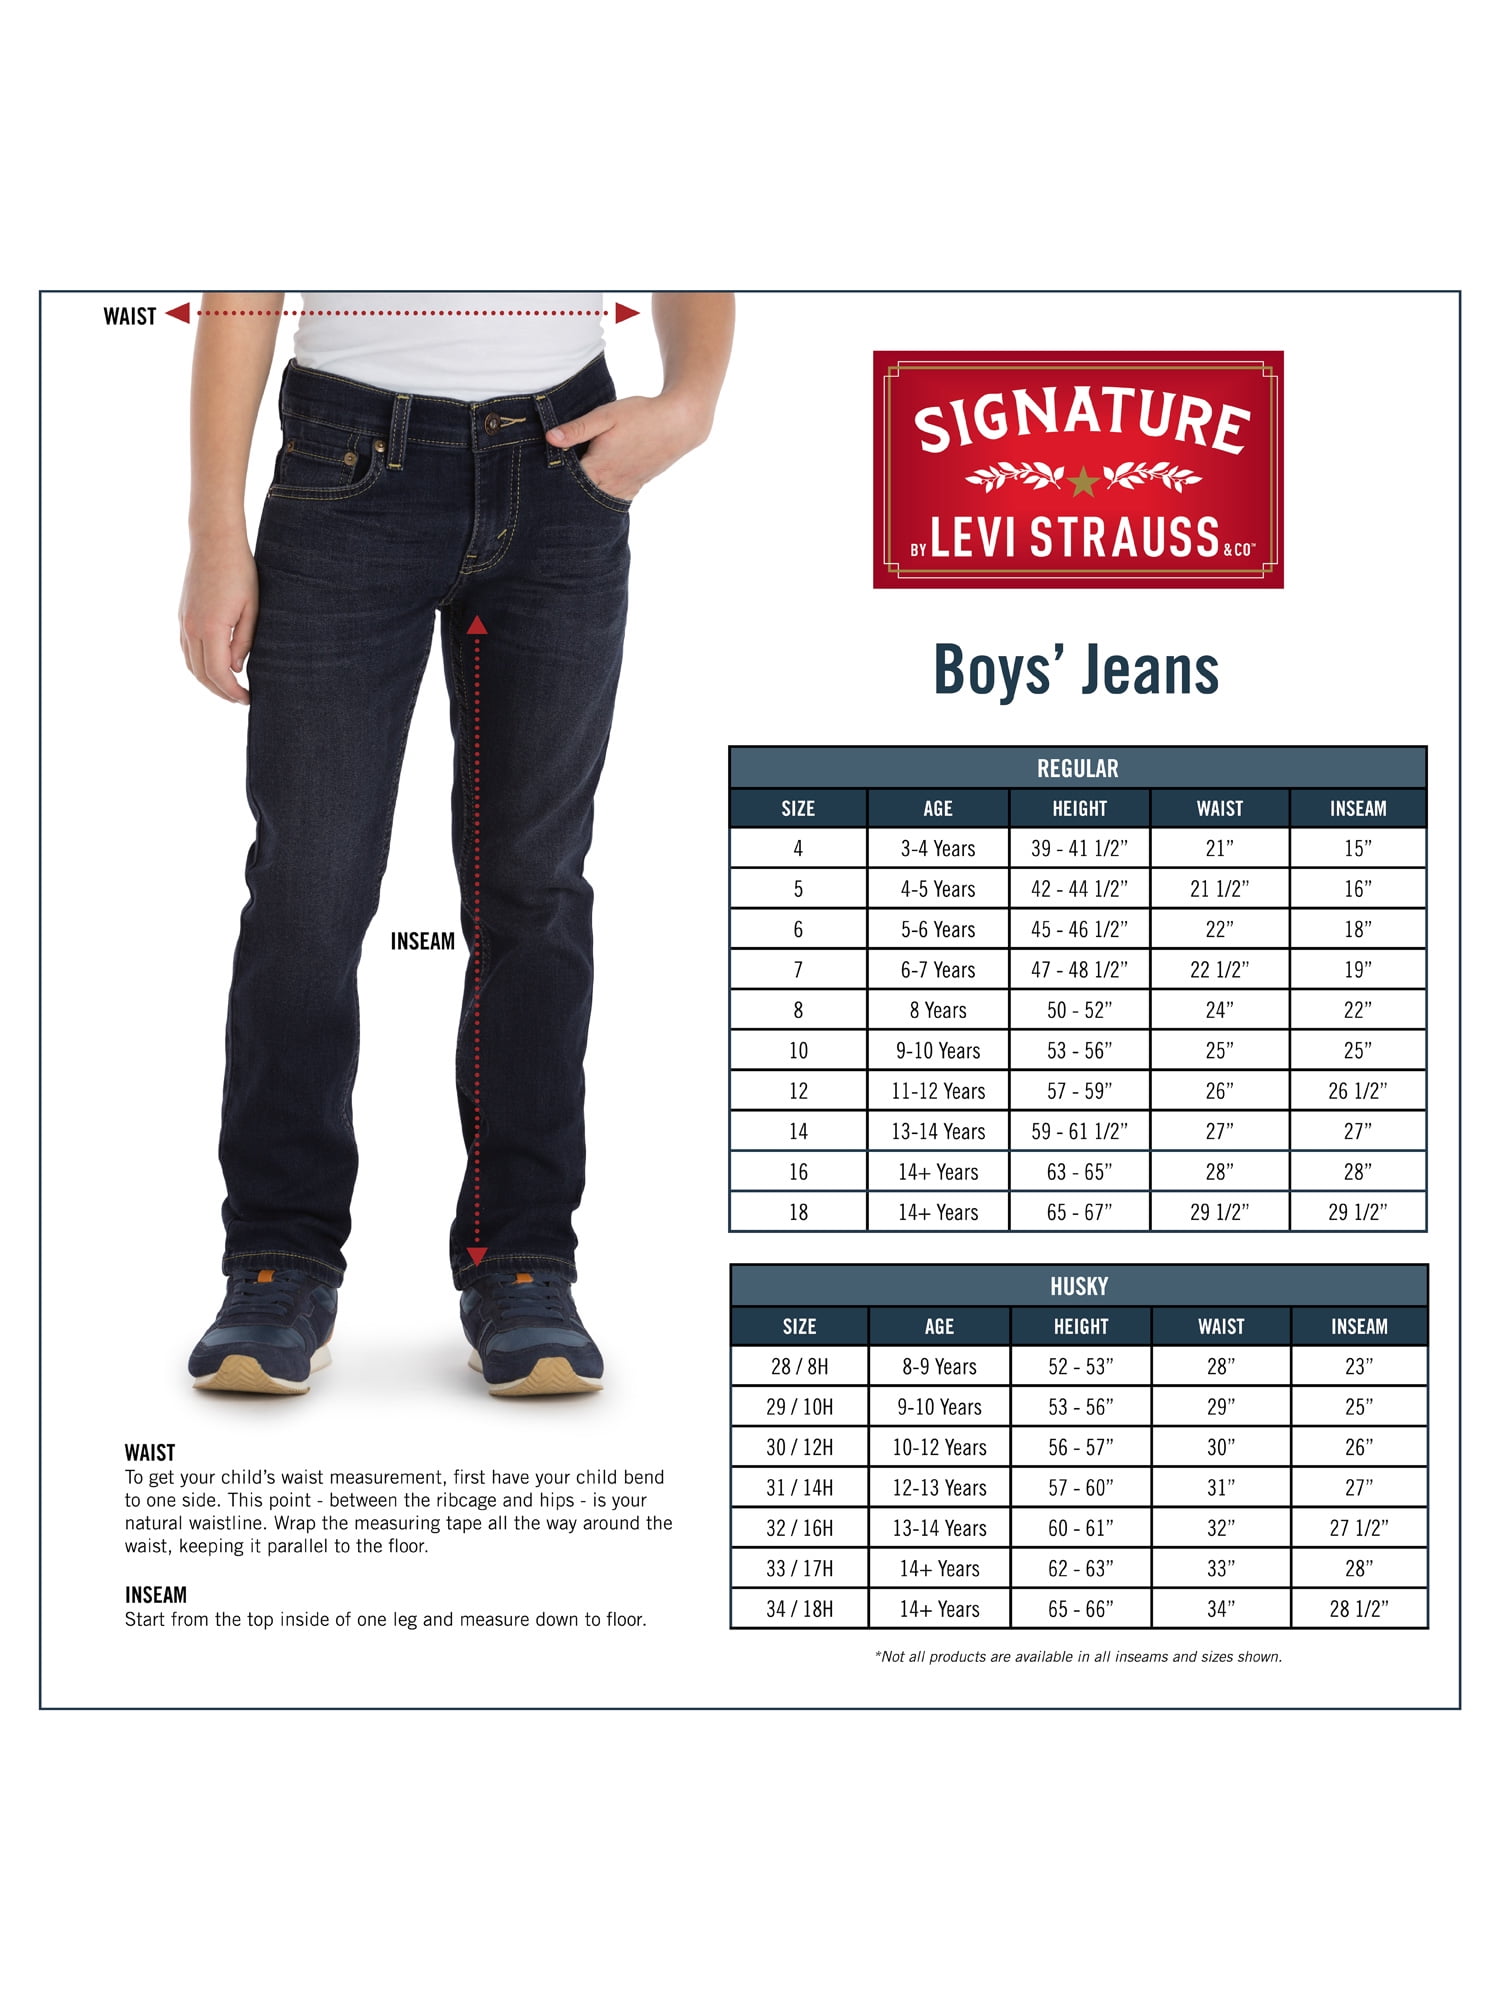 levis jeans measurement chart